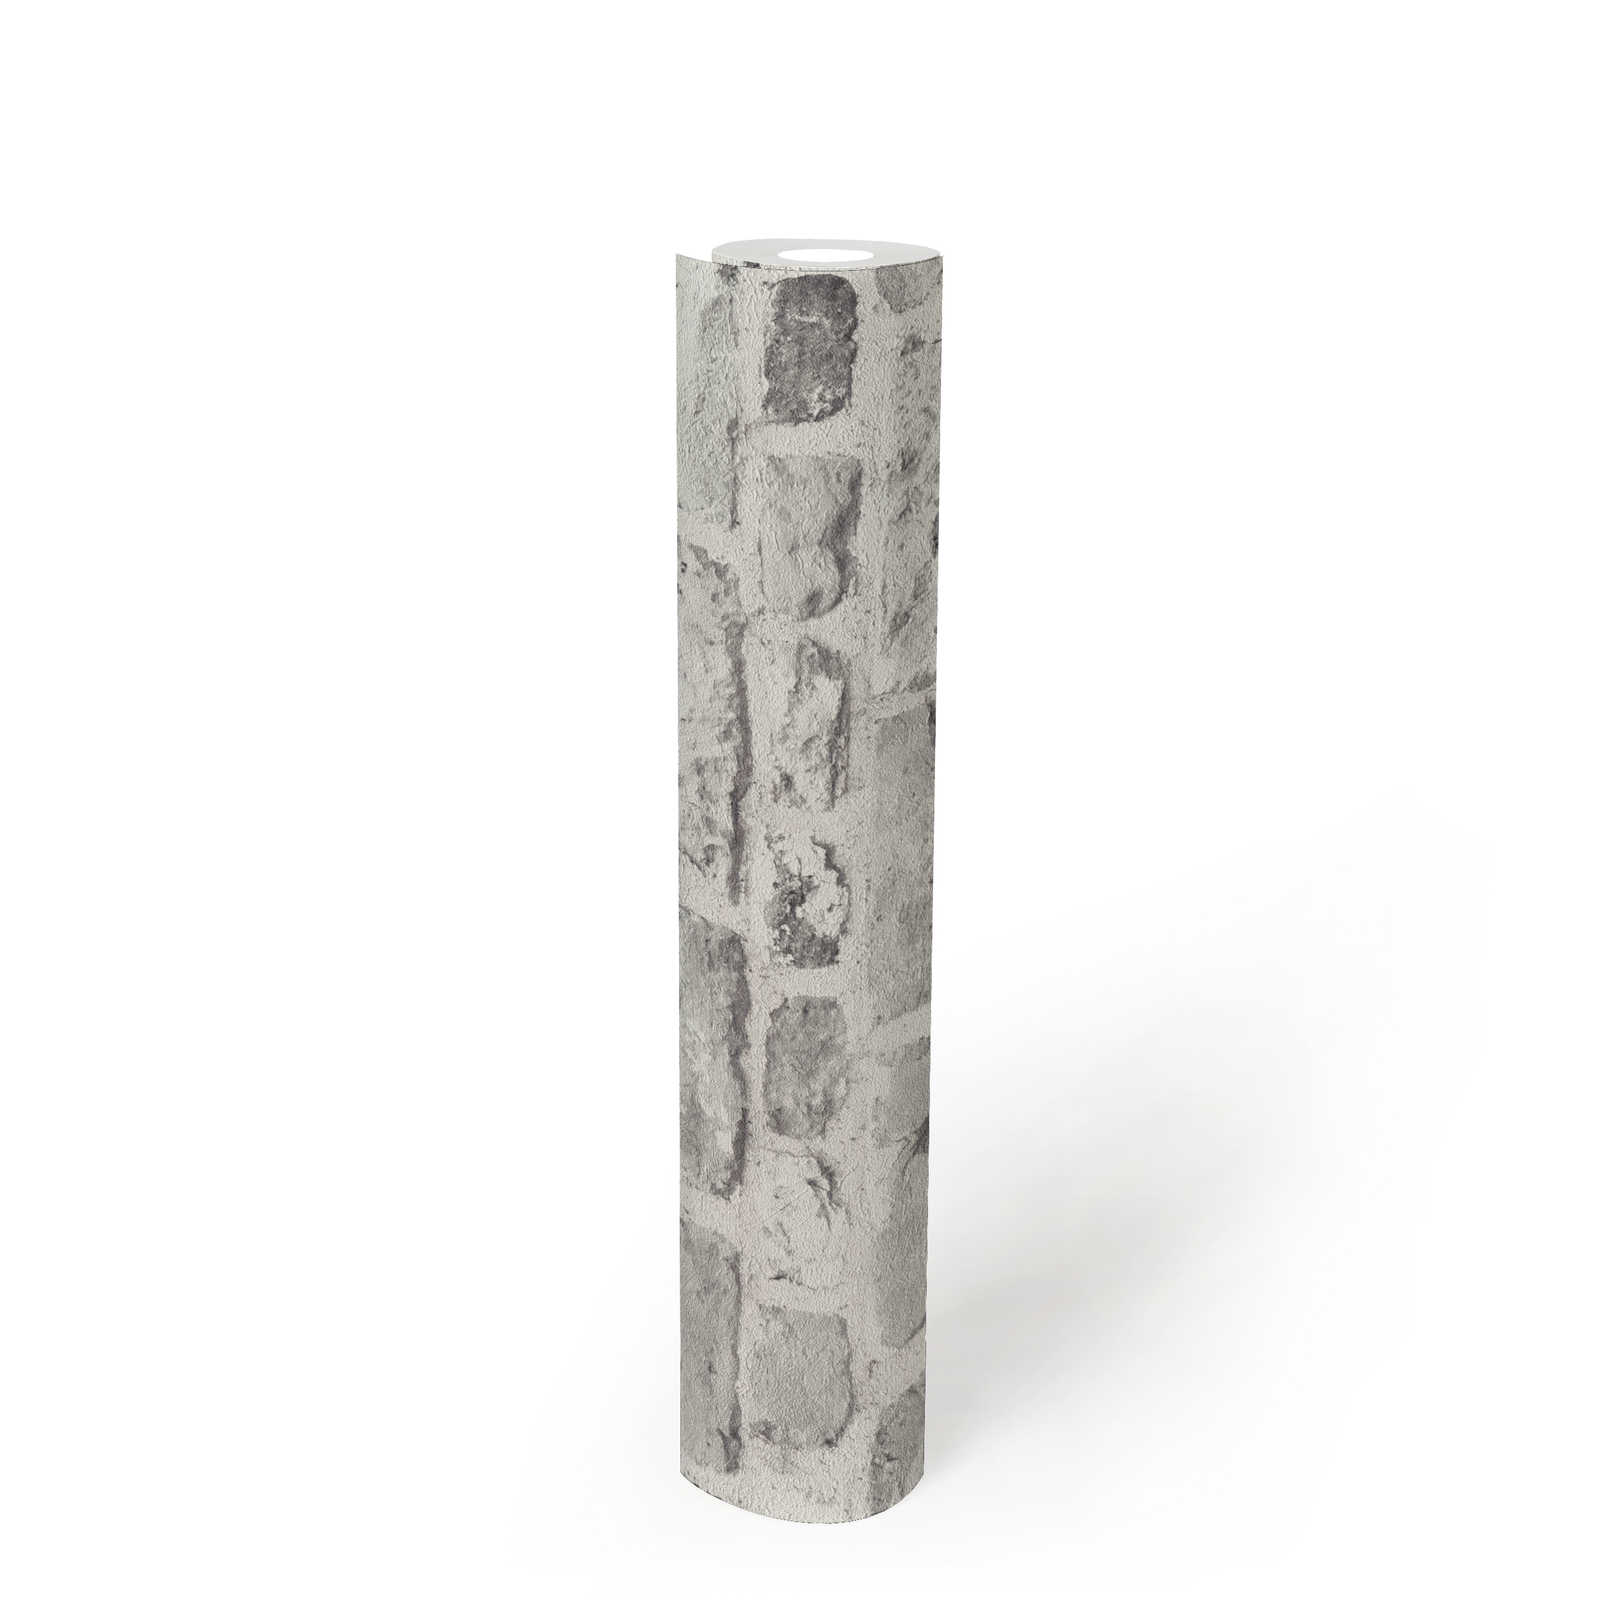             Papier peint imitation pierre avec maçonnerie 3D - gris, blanc
        